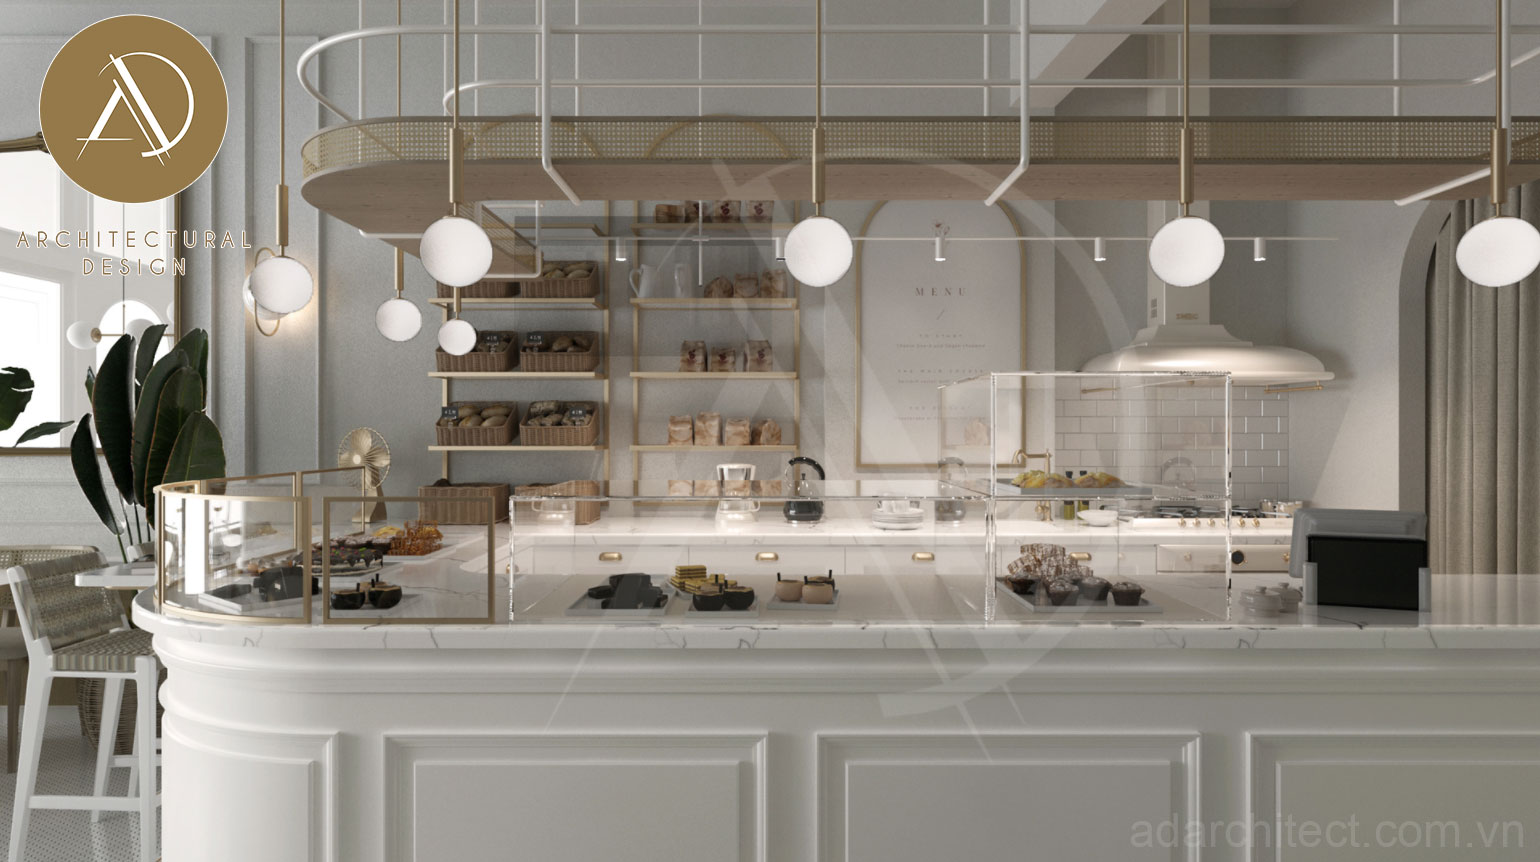 Thiết kế cửa hàng bánh ngọt: phối màu máy móc phụ kiện hài hòa với cả không gian cửa hàng